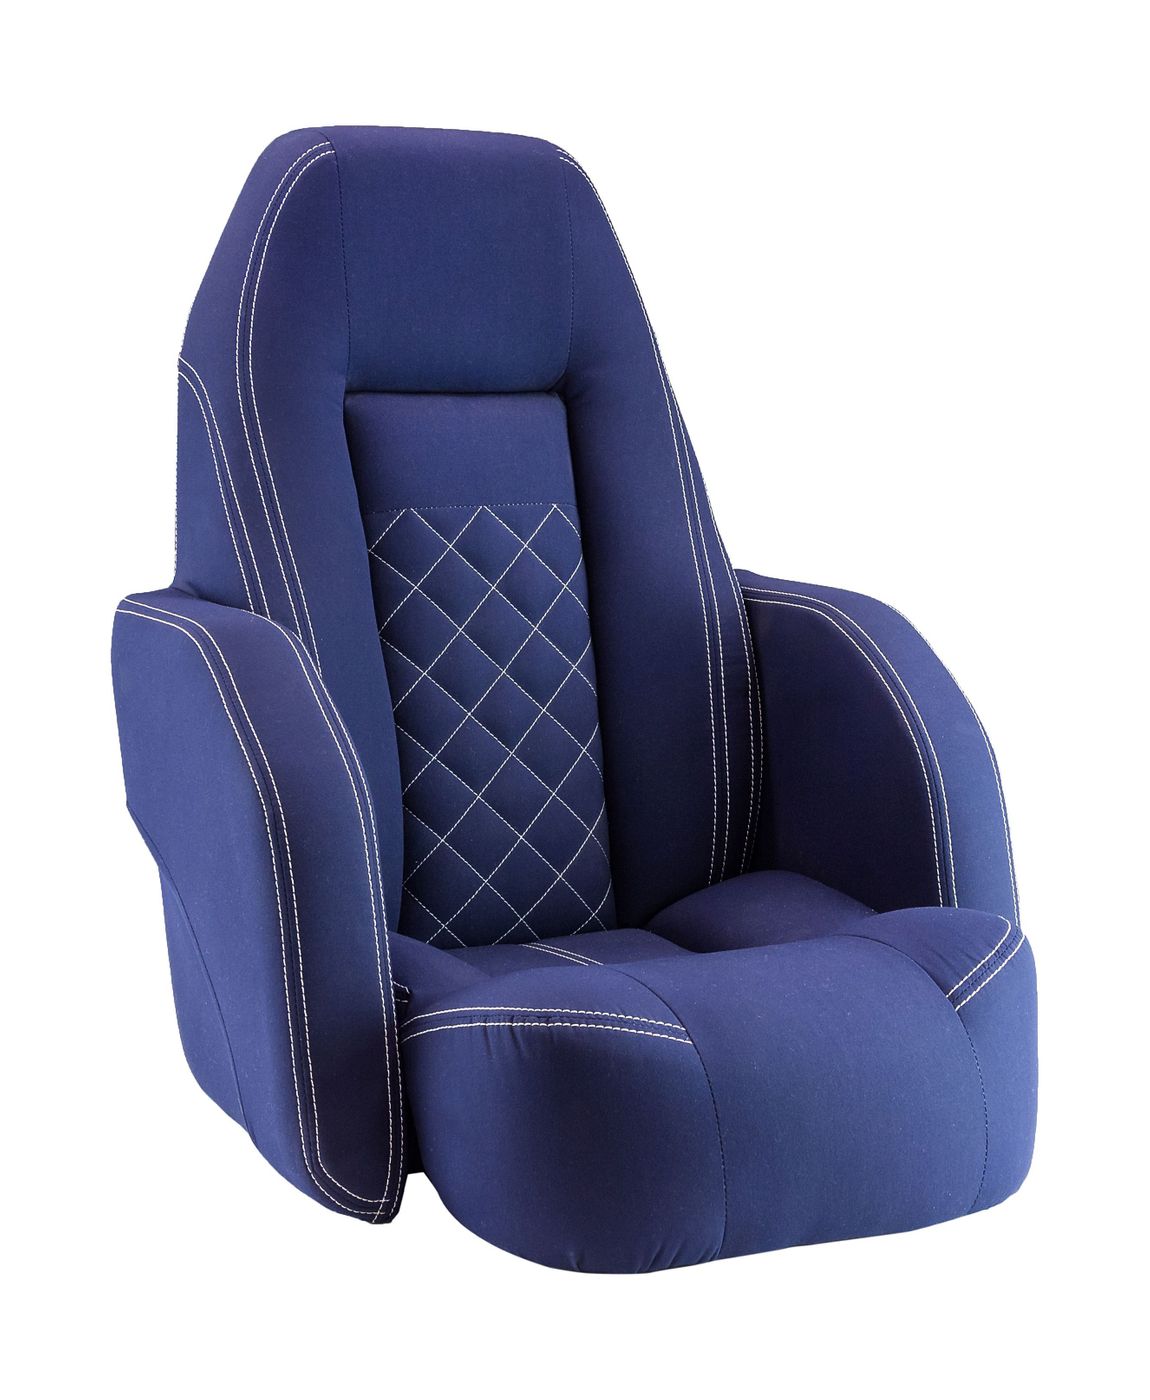 Кресло ROYALITA мягкое, подставка, обивка ткань Markilux темно-синяя 570000395 ткань 1 м п doux лен 300 см брусника